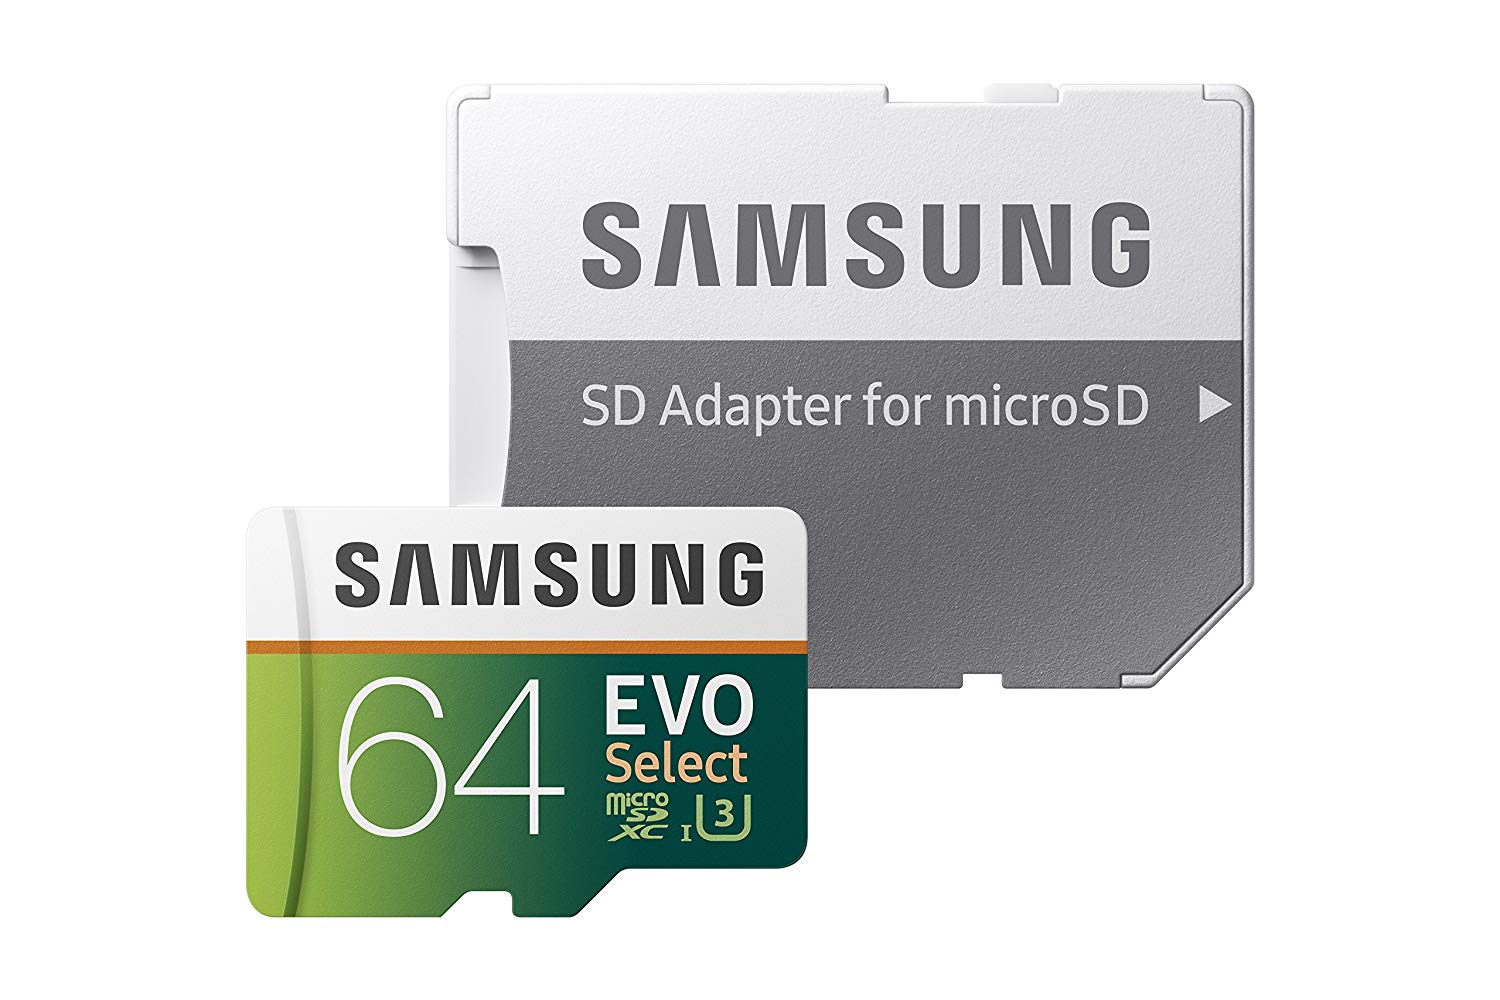 Samsung EVO 64GB